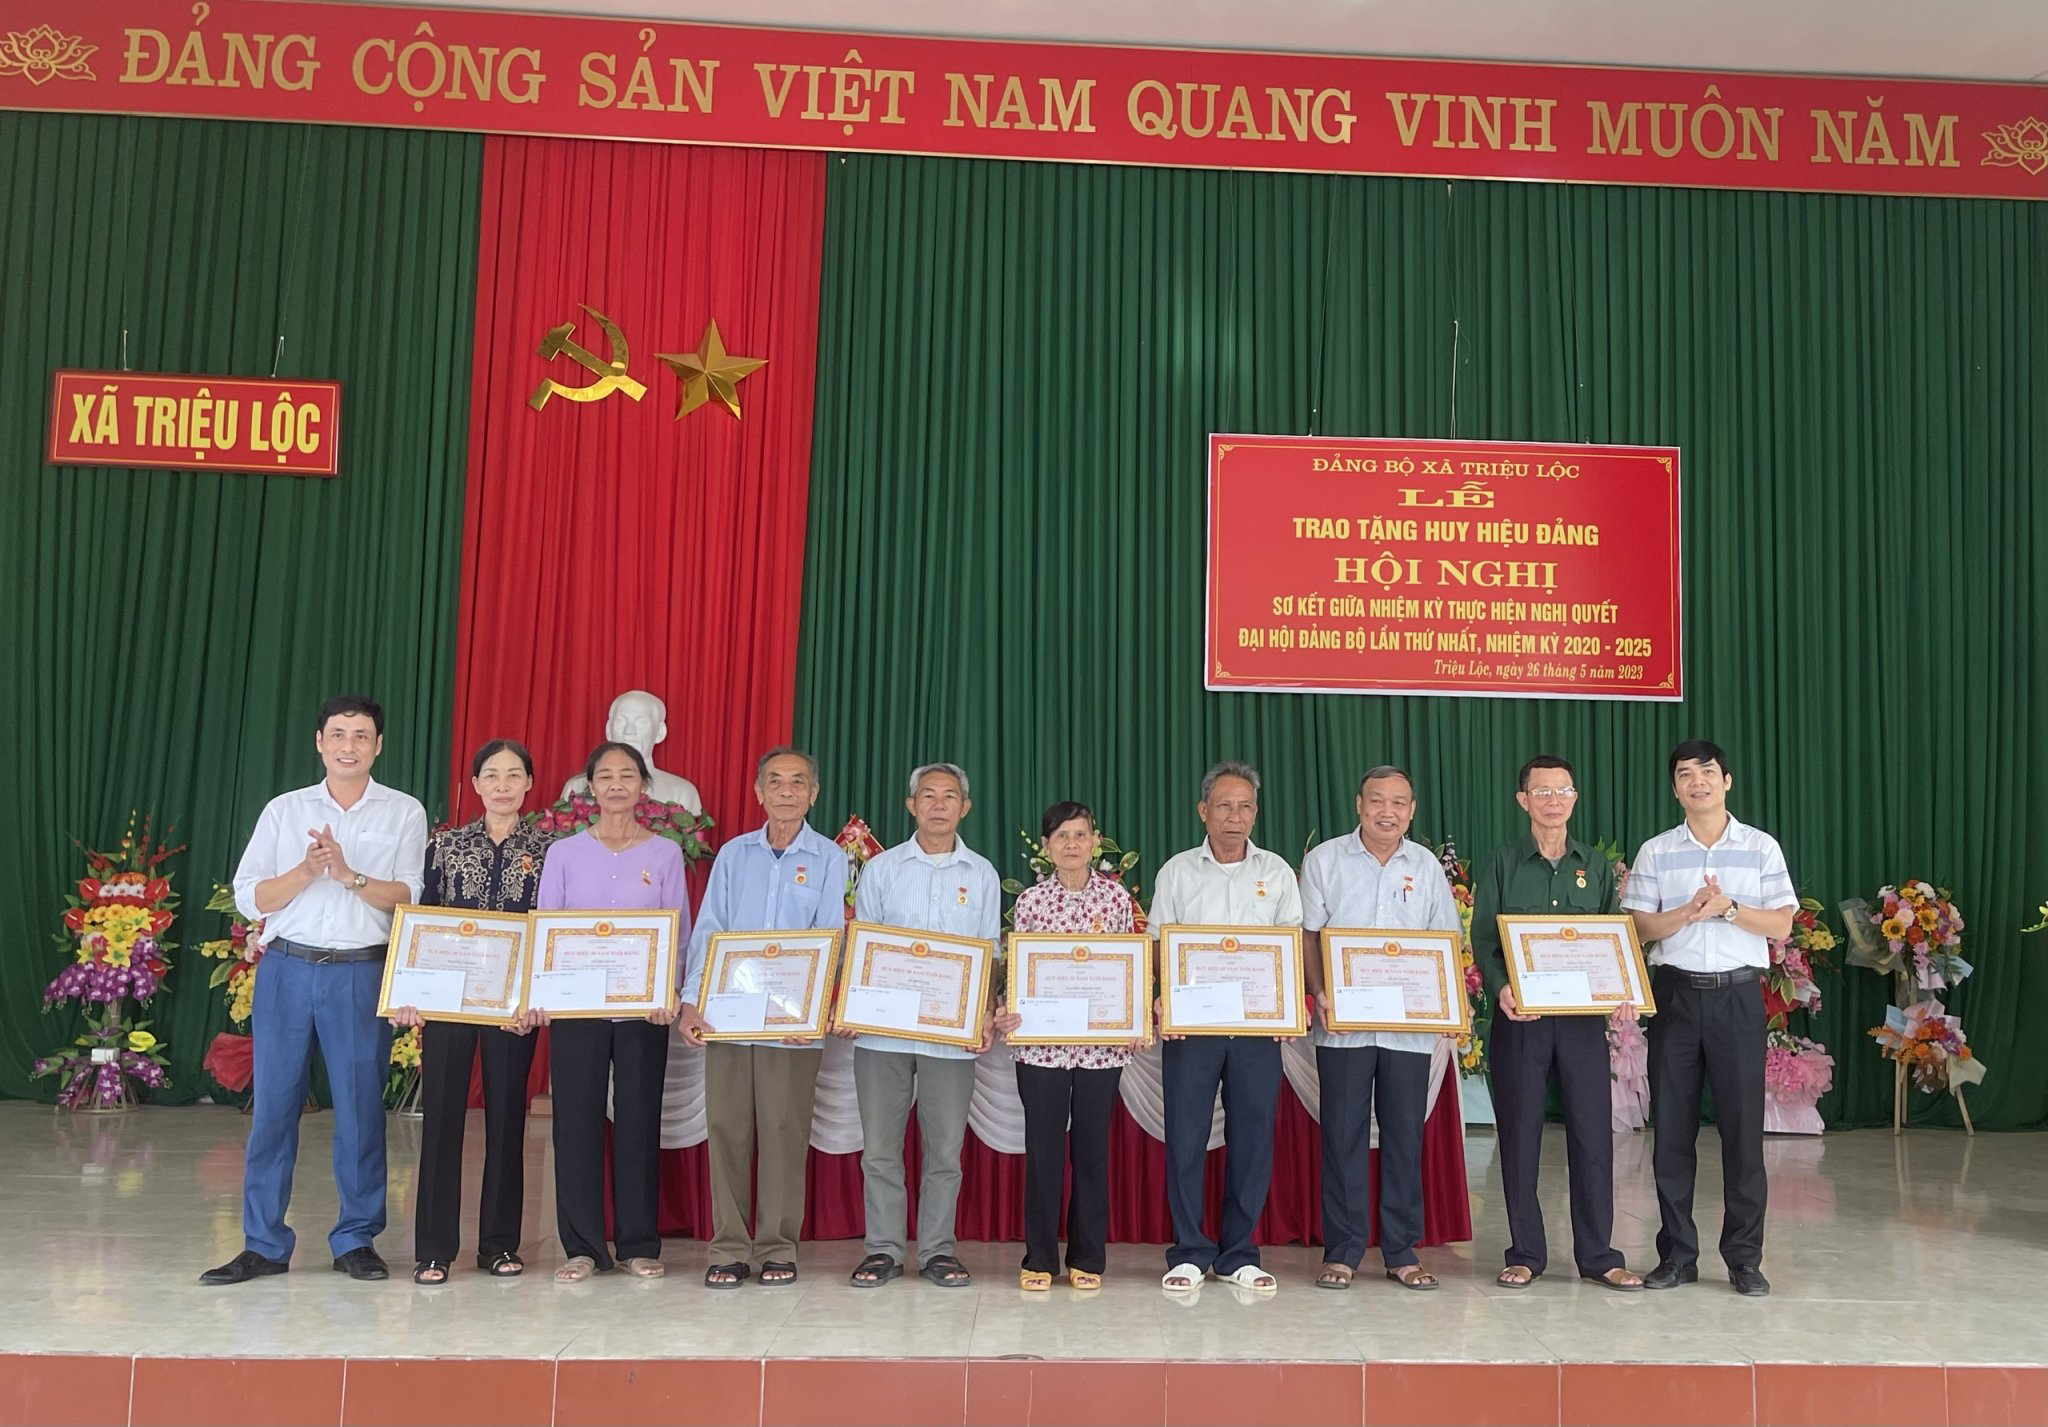 Đảng bộ xã Triệu Lộc trao Huy hiệu Đảng và tổ chức hội nghị sơ kết giữa nhiệm kỳ thực hiện Nghị quyết Đại hội Đảng bộ xã lần thứ XXIX, nhiệm kỳ 2020-2025.